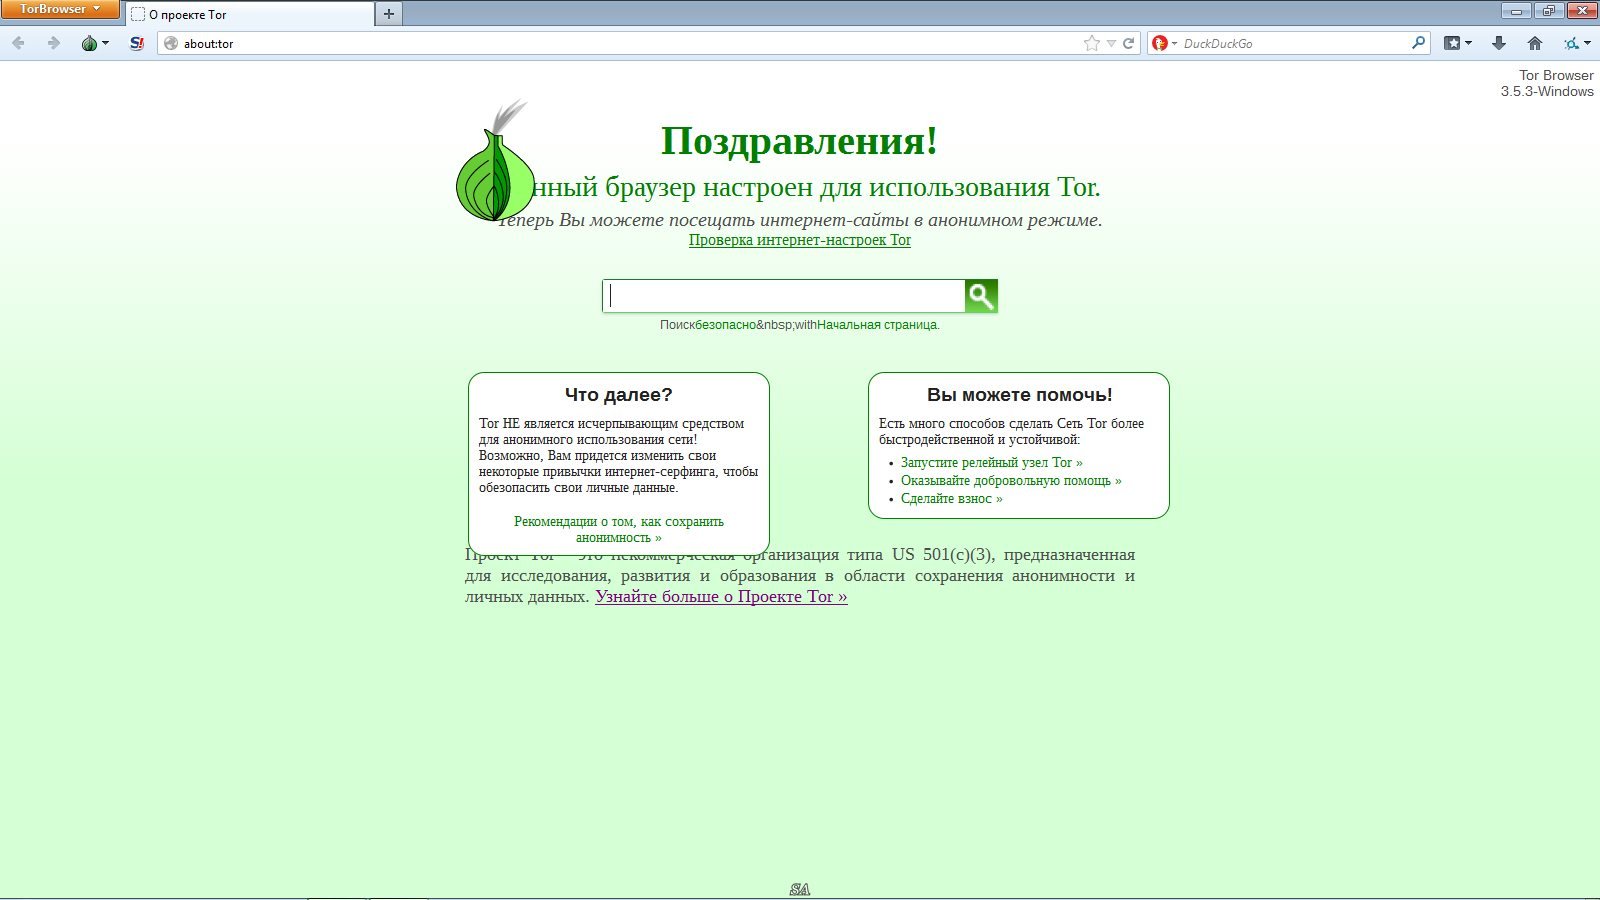 The onion browser tor mega браузер тор скачать бесплатно русская версия mega